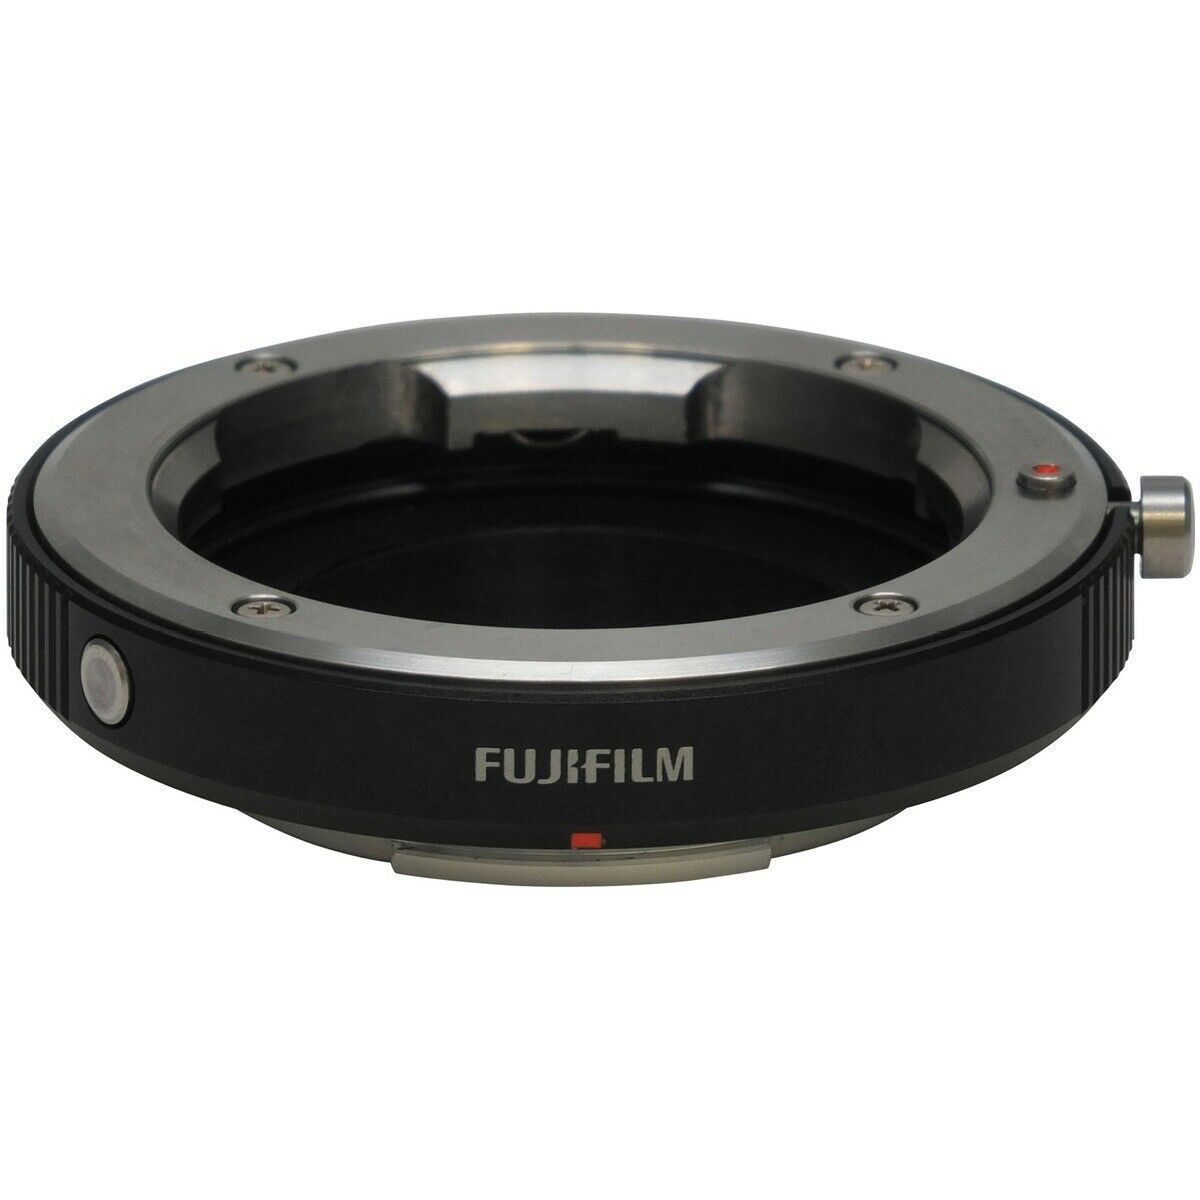 Fujifilm M Mount Adapter - Fujifilm Objektivadapter Bajonett X/M - NEU